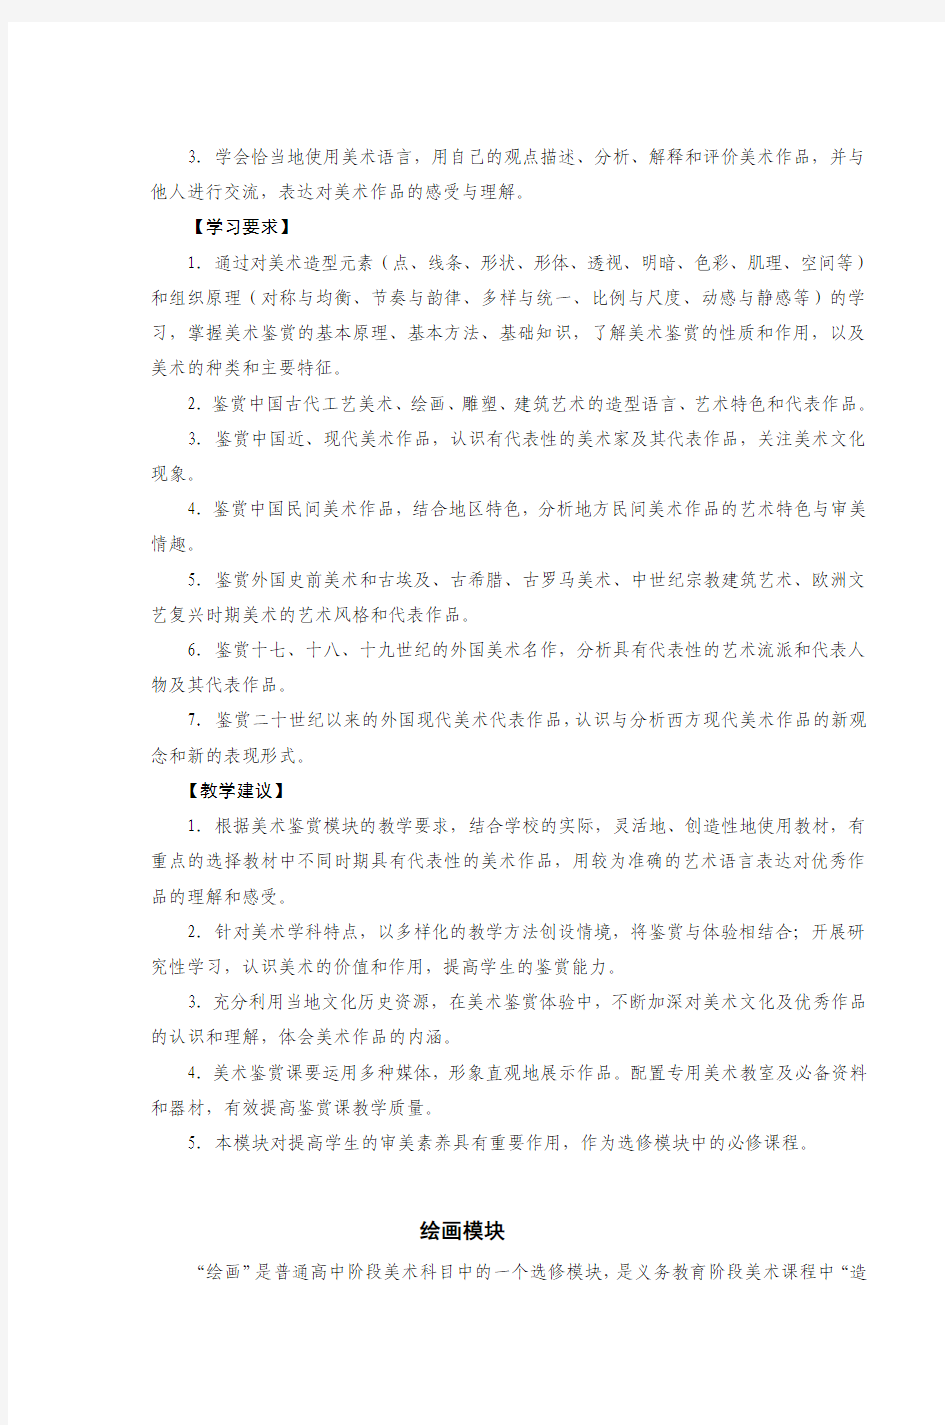 江苏省普通高中美术课程标准教学要求